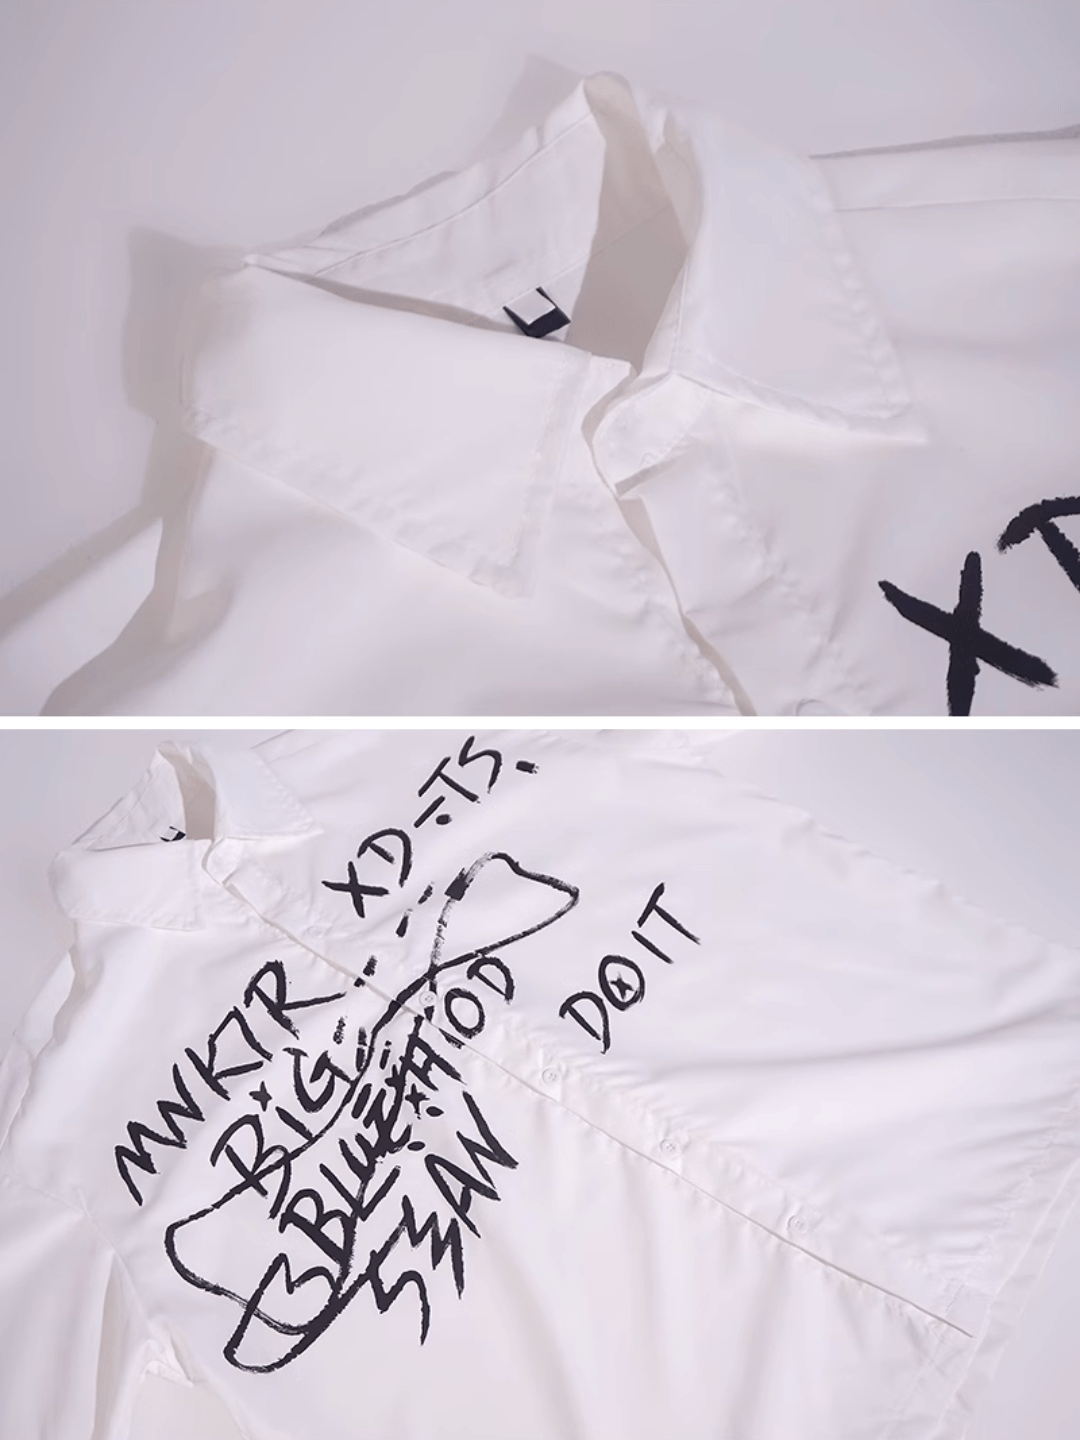 [FLAT ROOM] Lingshiduo/artistic graffiti design thin shirt FL64